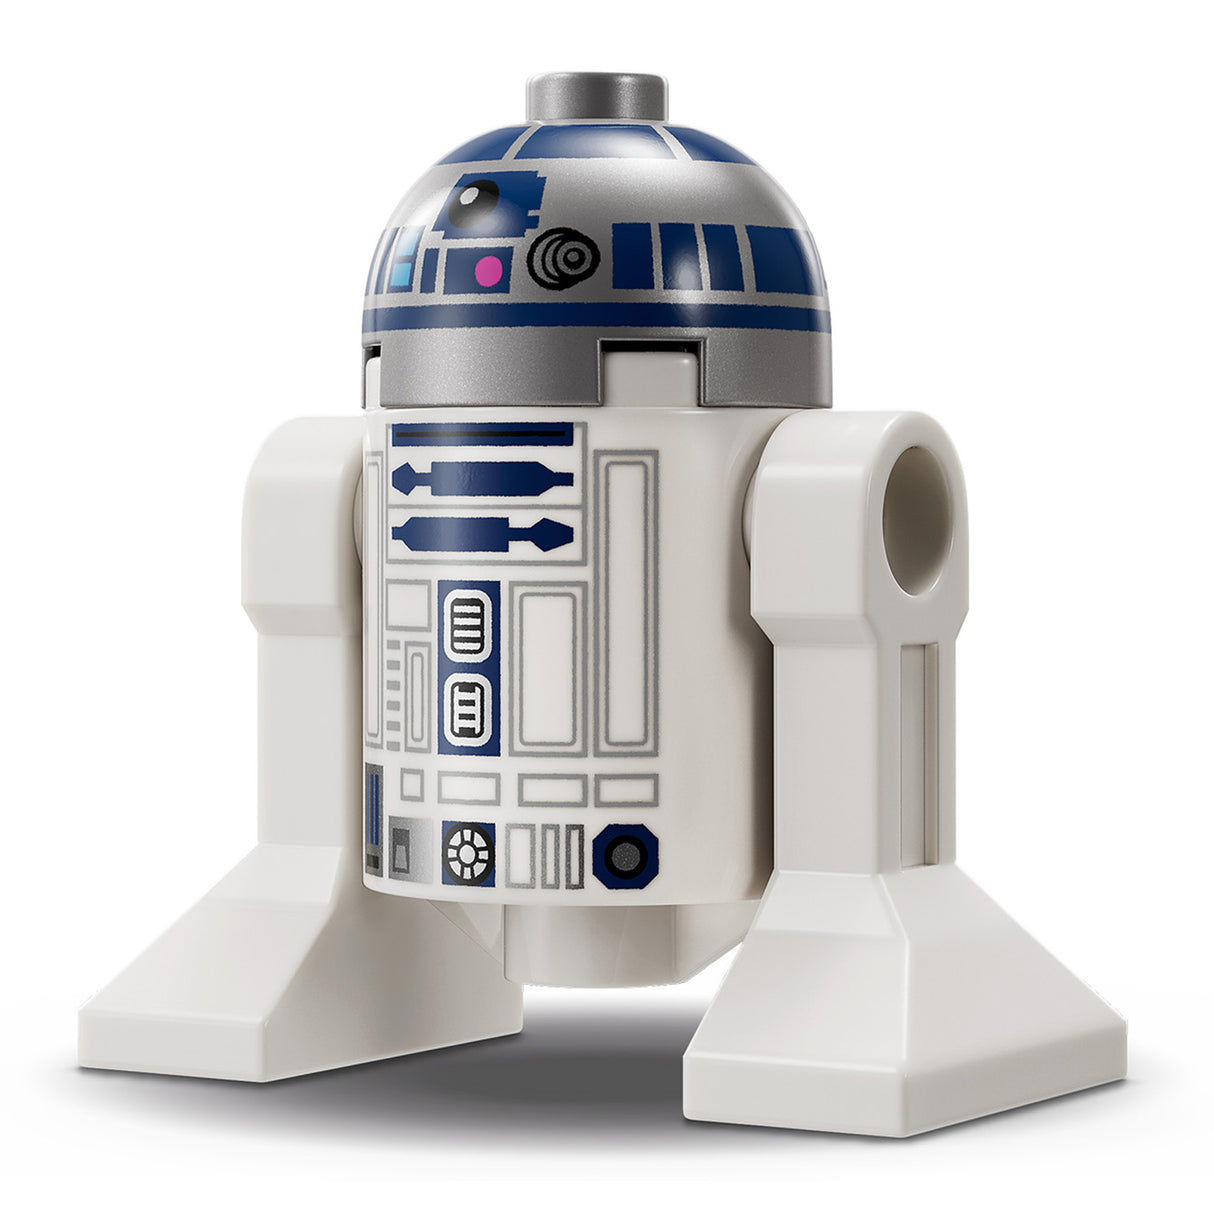 LEGO Star Wars R2-D2 75379, (1050-Pieces)